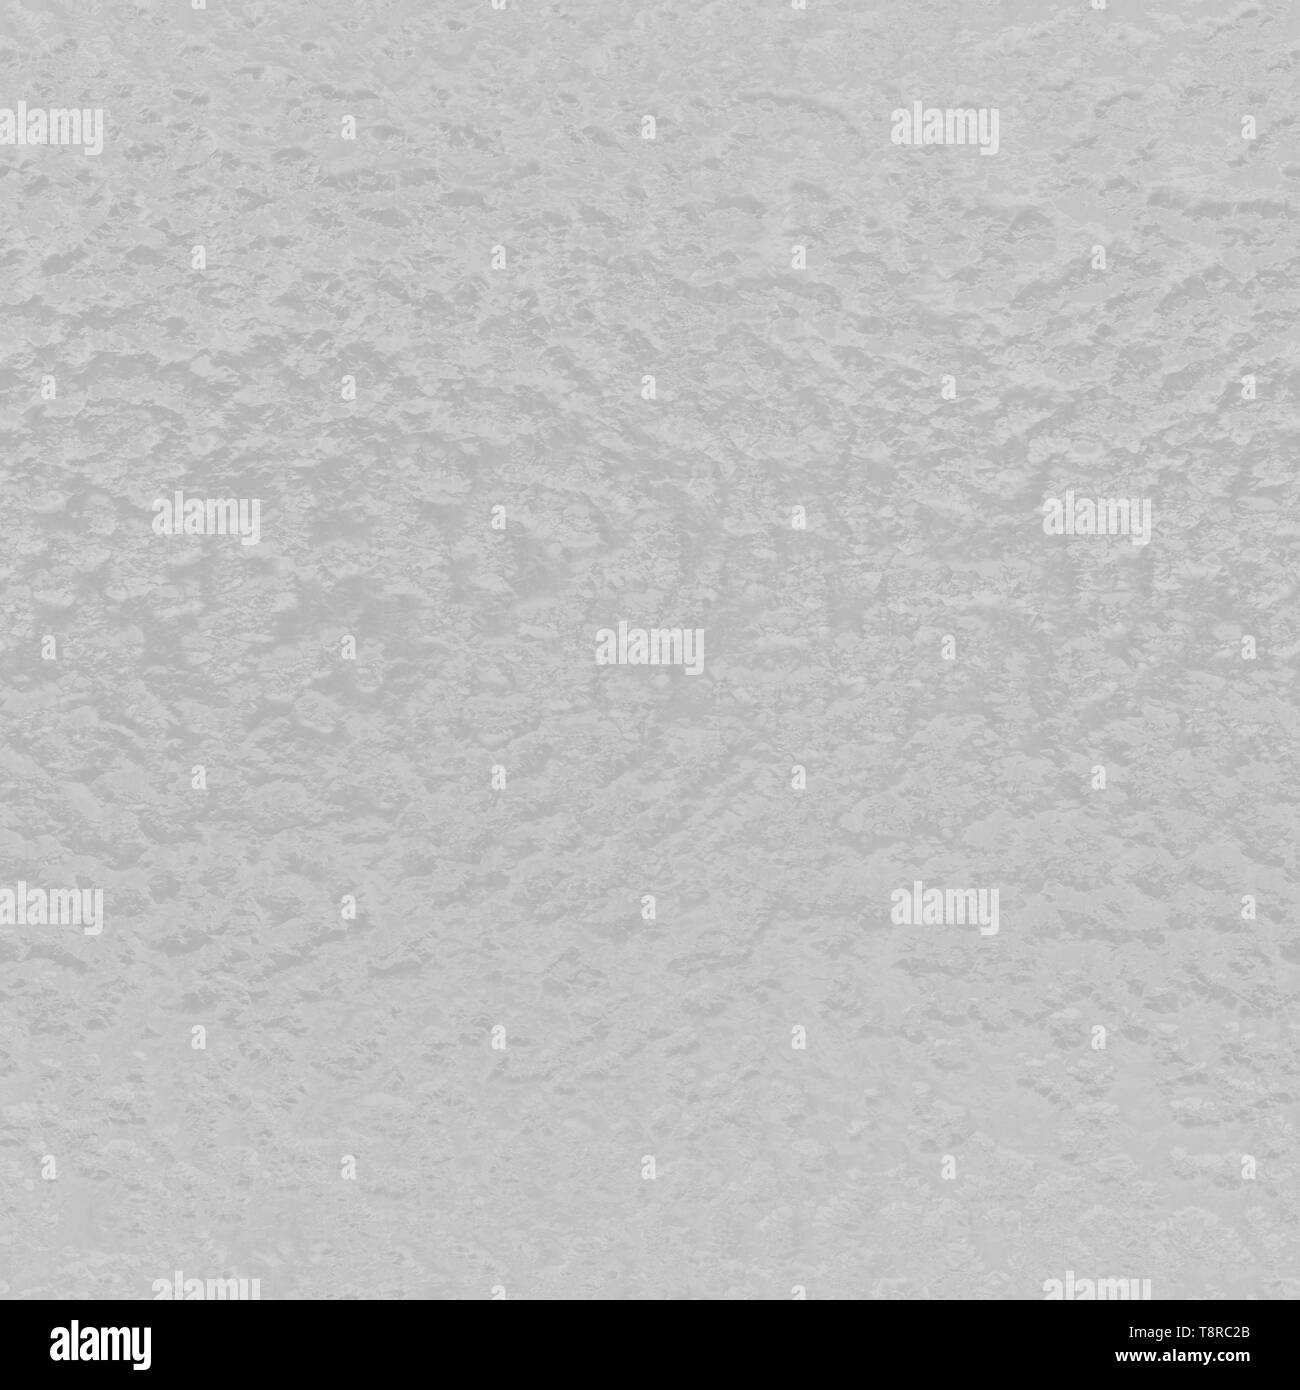 Vetro smerigliato Texture Seamless Tile Foto stock - Alamy